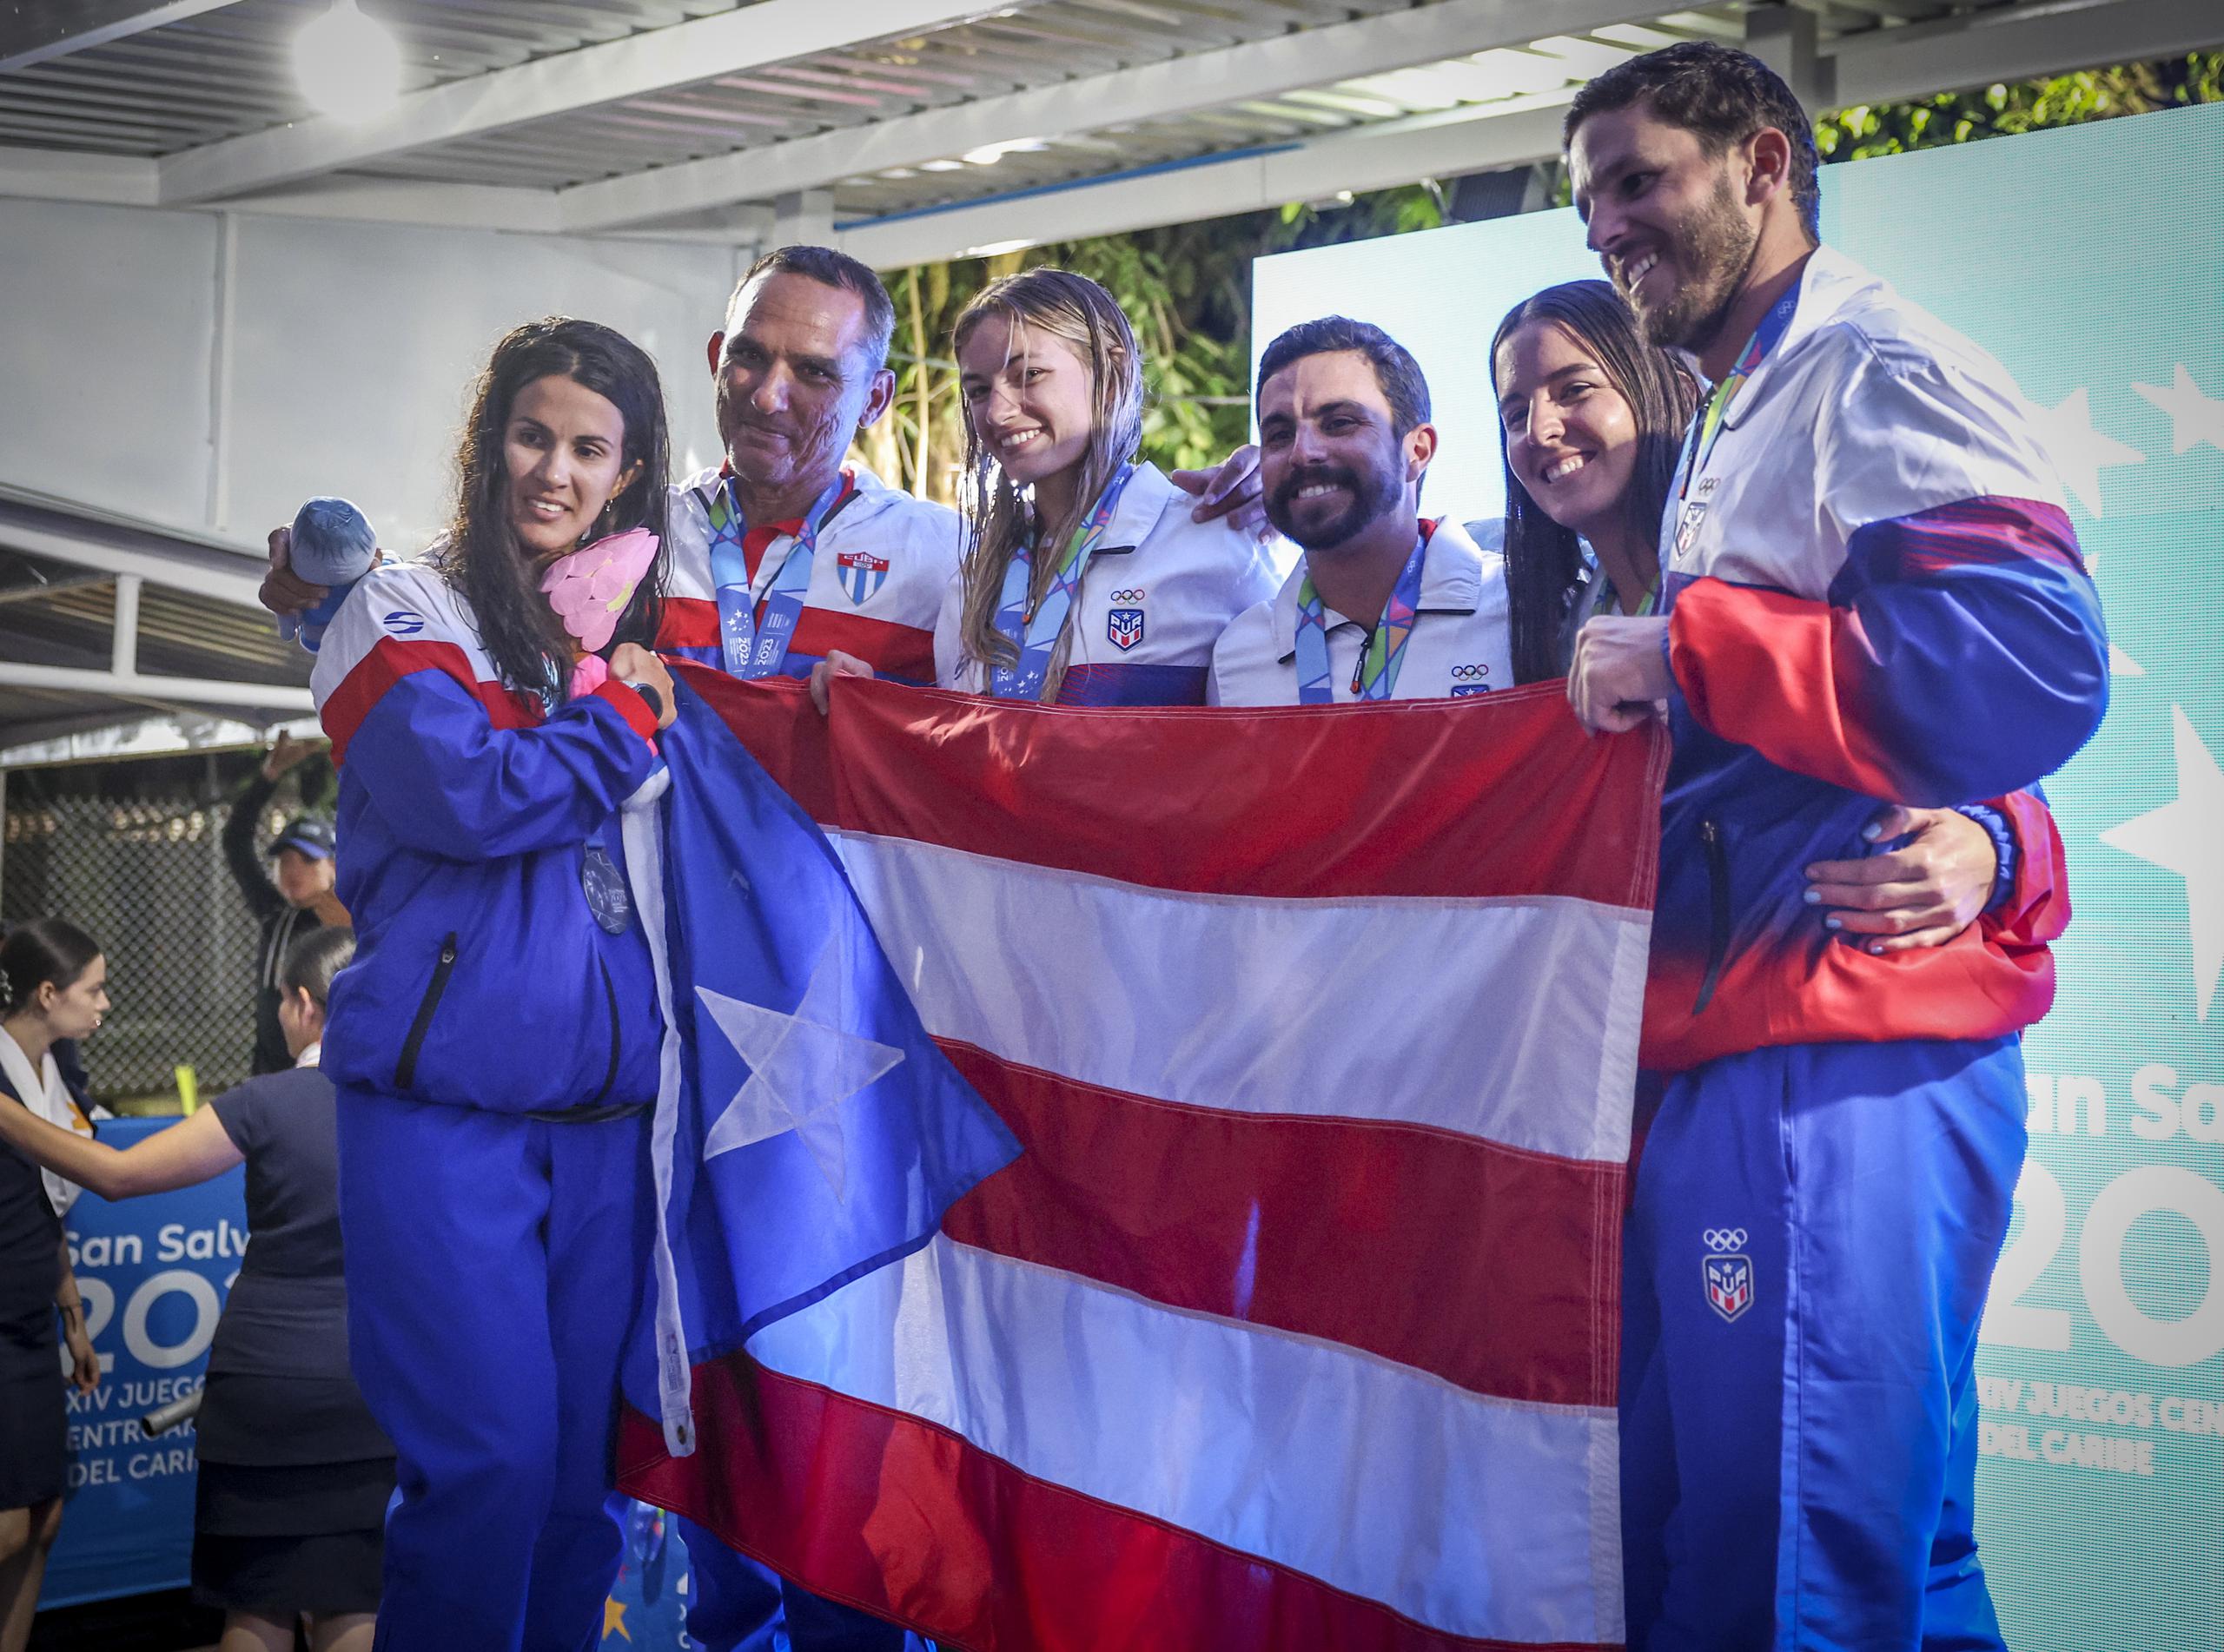 En esta foto aparecen los medallistas boricuas en los eventos de vela. Entre ellos destacan el veterano Quique Figueroa, quien ganó plata junto a Adriana Riefkohl, y Raúl Ríos, el abanderado de Puerto Rico, quien ganó oro.